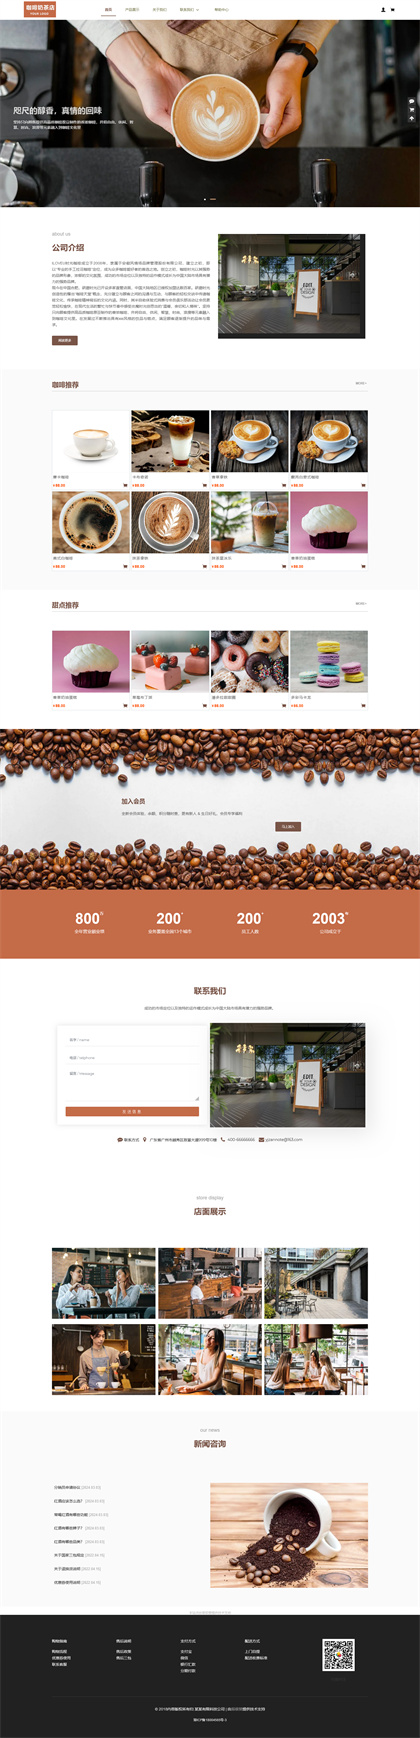 咖啡店商城模板-咖啡屋-奶茶店-休闲吧-咖啡厂商城网站模板网站模板图片